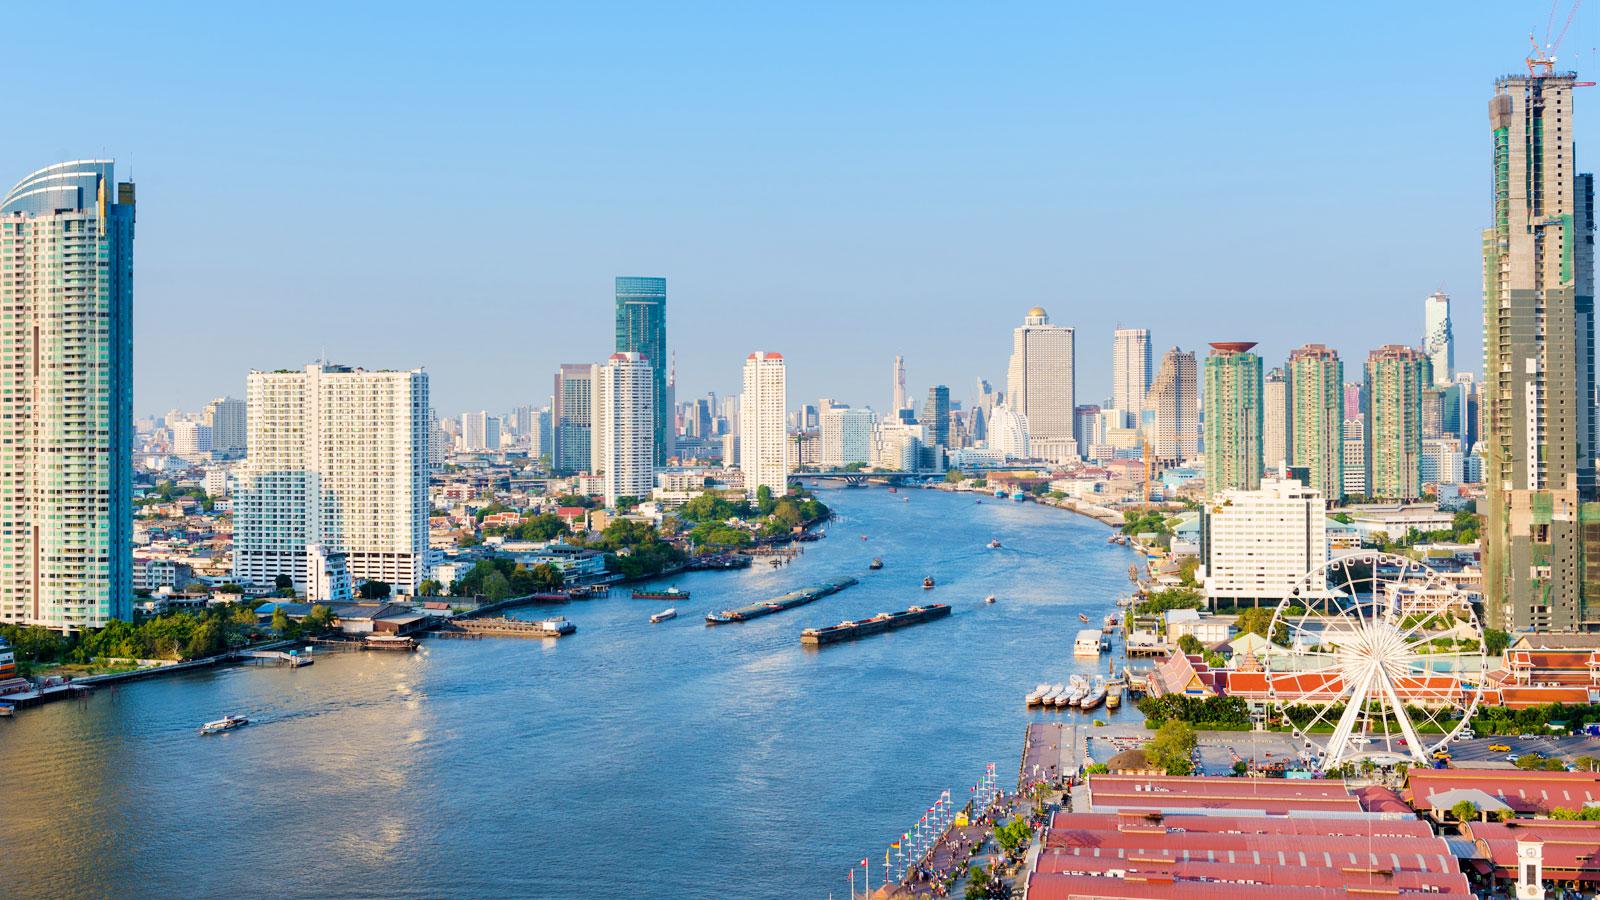 Tour du lịch Bangkok - Pattaya (Khách sạn 4*)